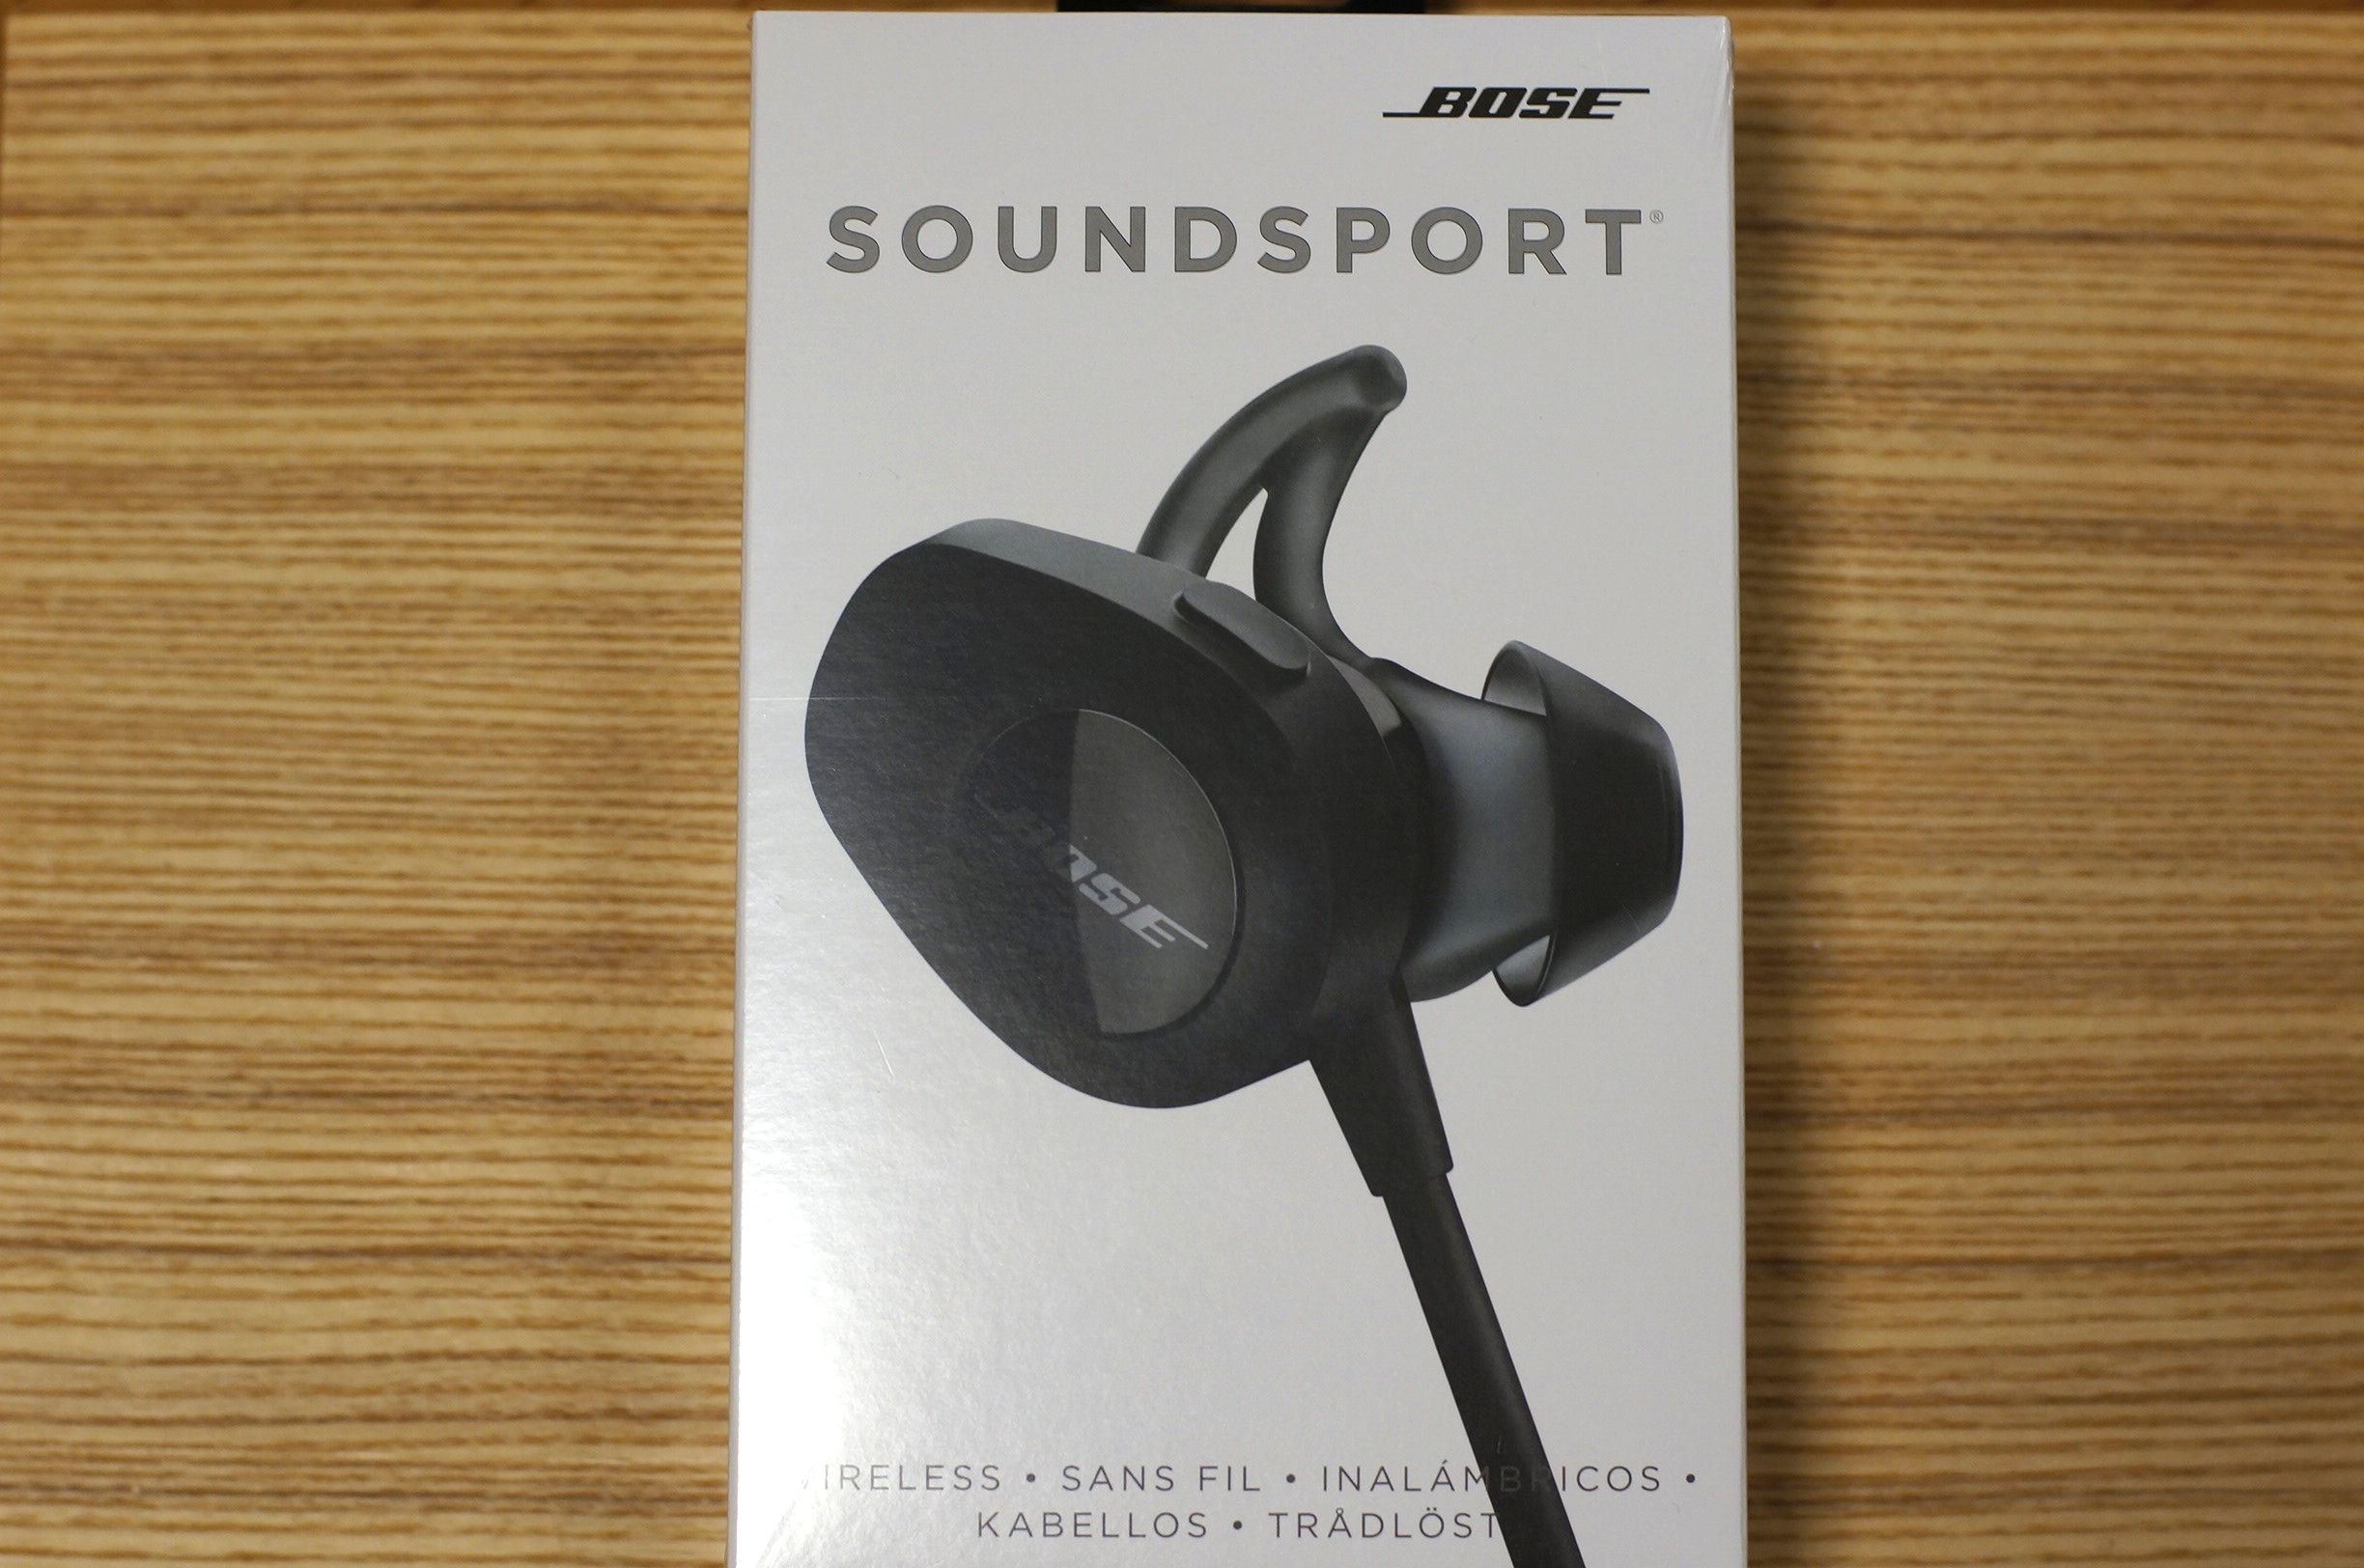 発売されたばかりの Bose SoundSport wireless headphones を開封 